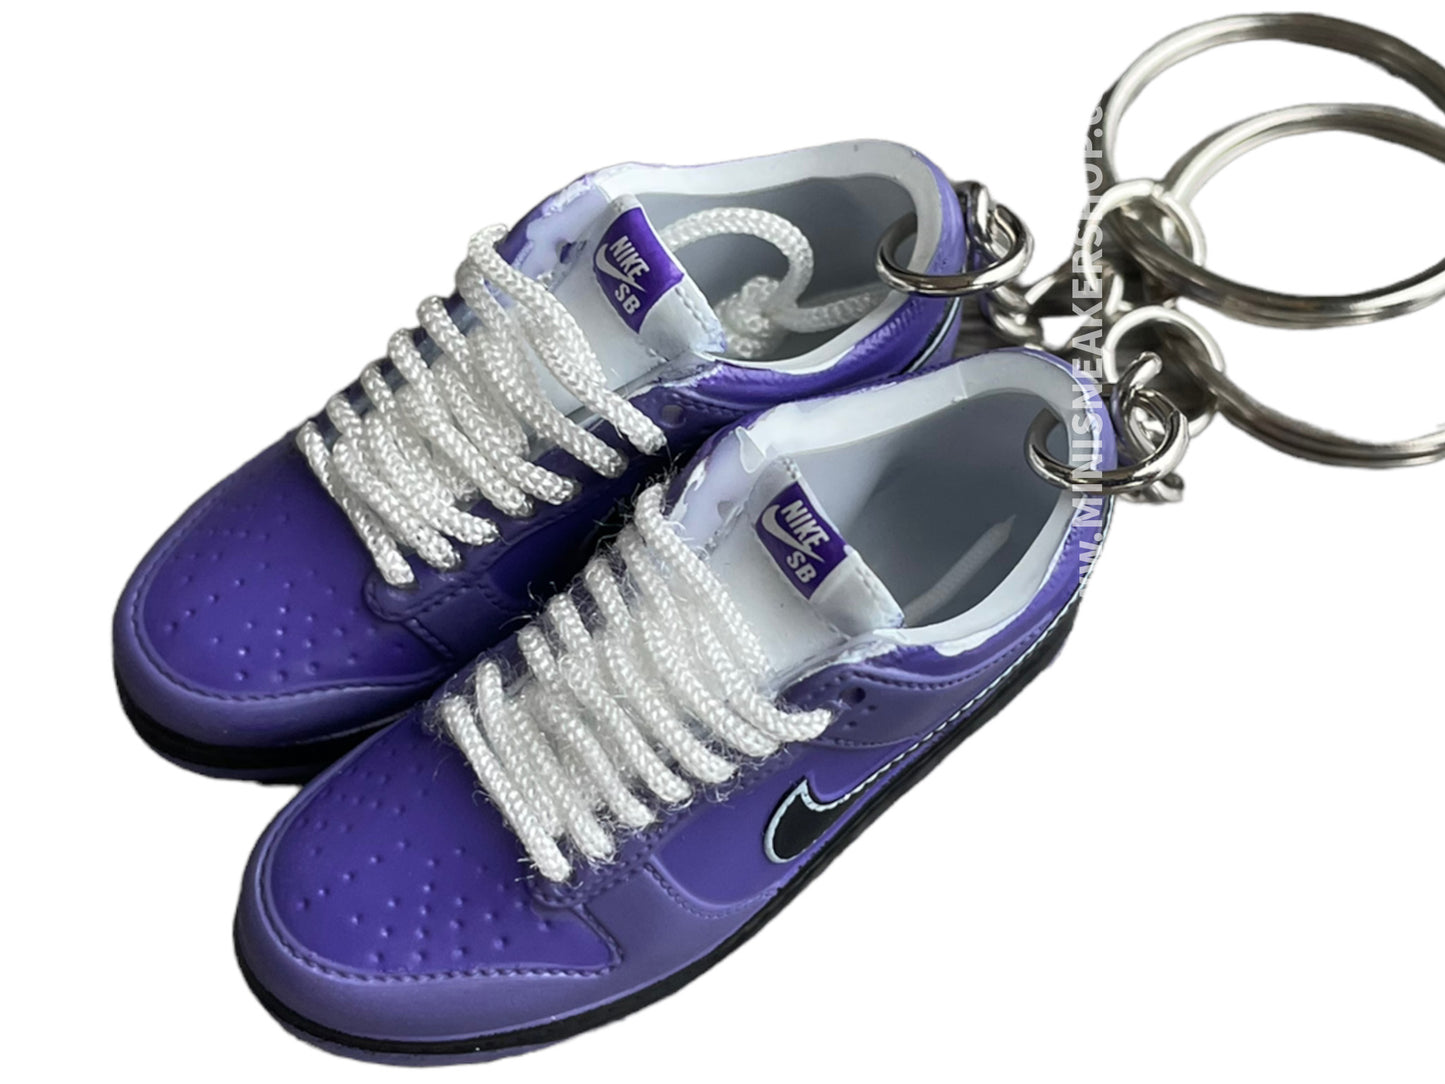 Mini sneaker keychain 3D Dunk - King Walk